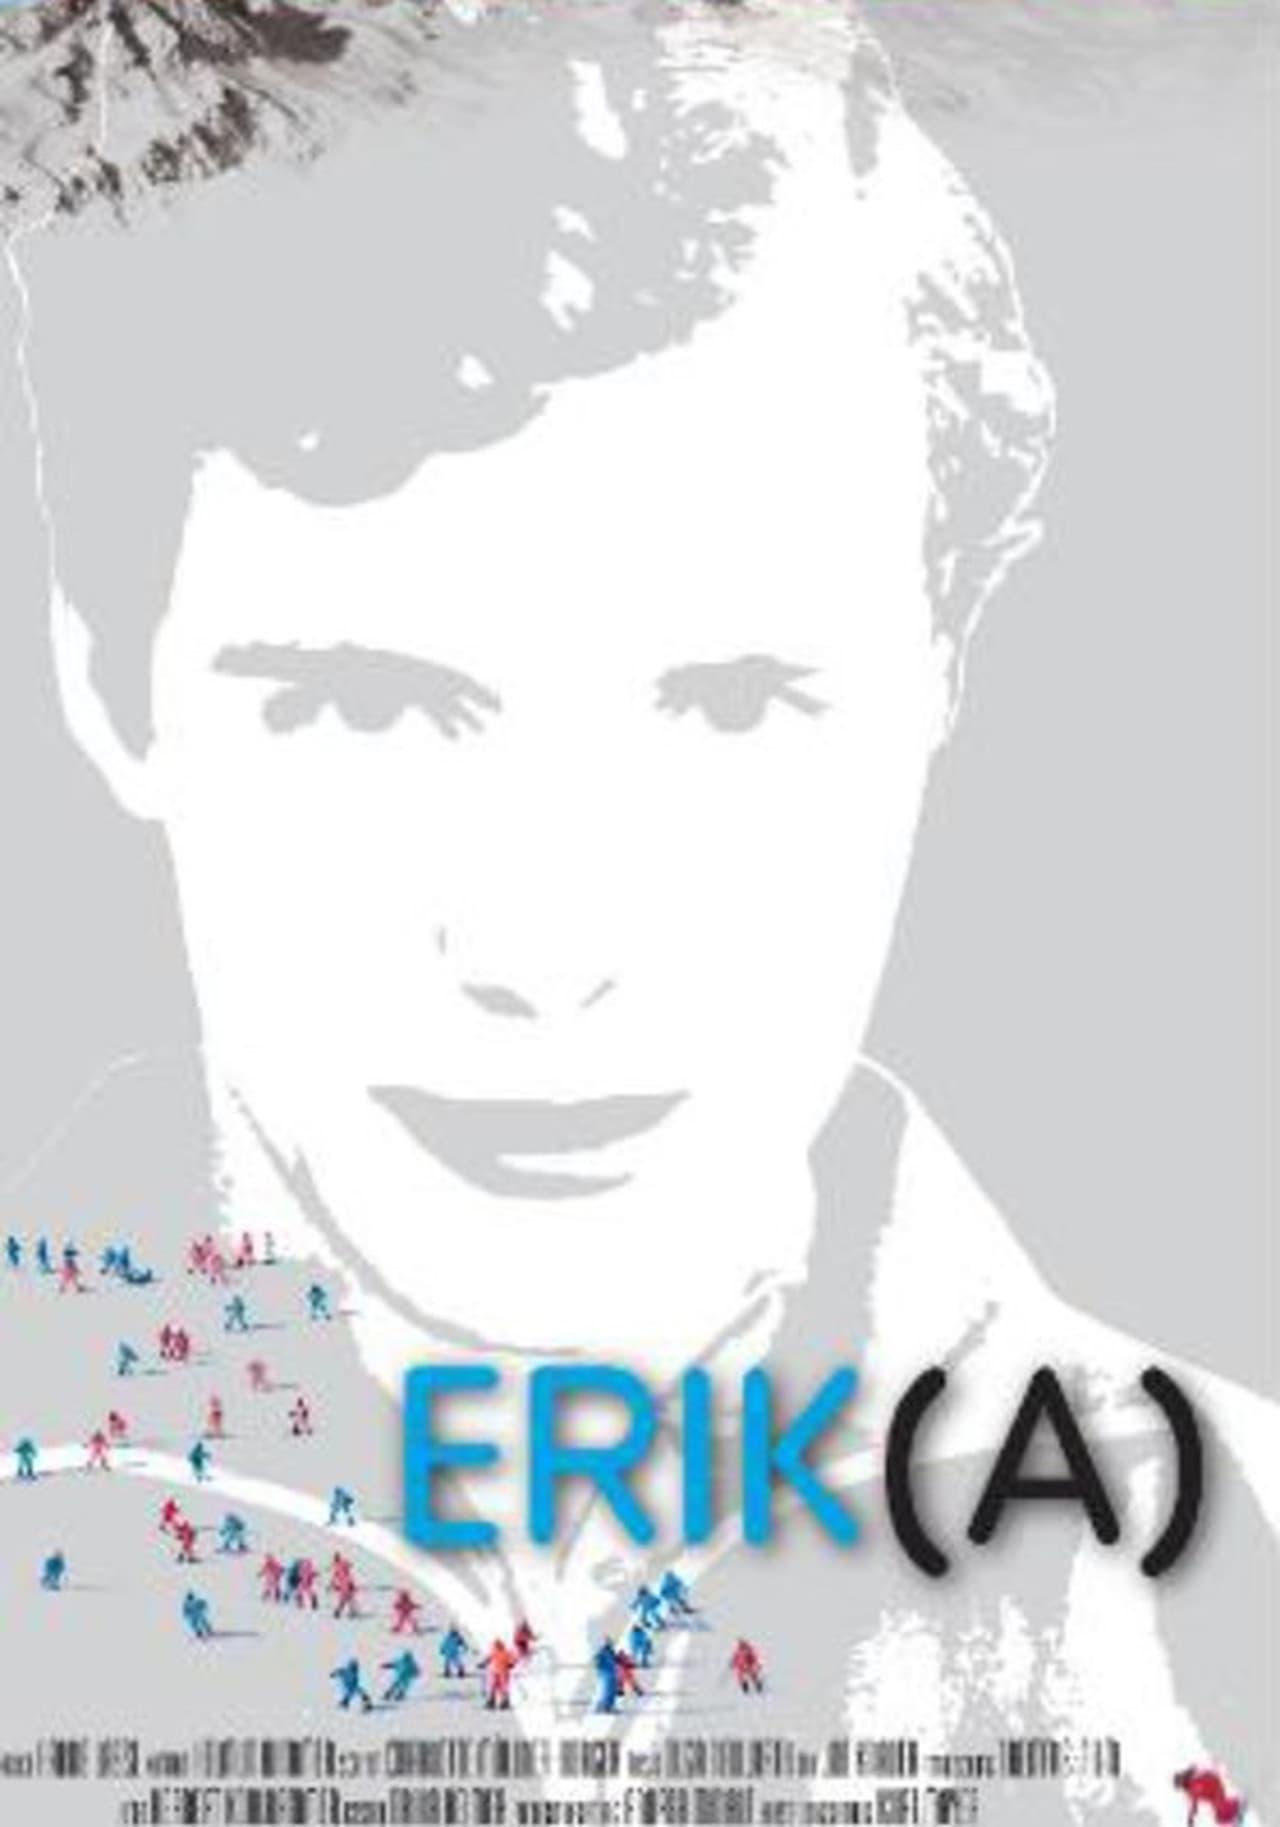 Erik(A) - Der Mann, der Weltmeisterin wurde poster